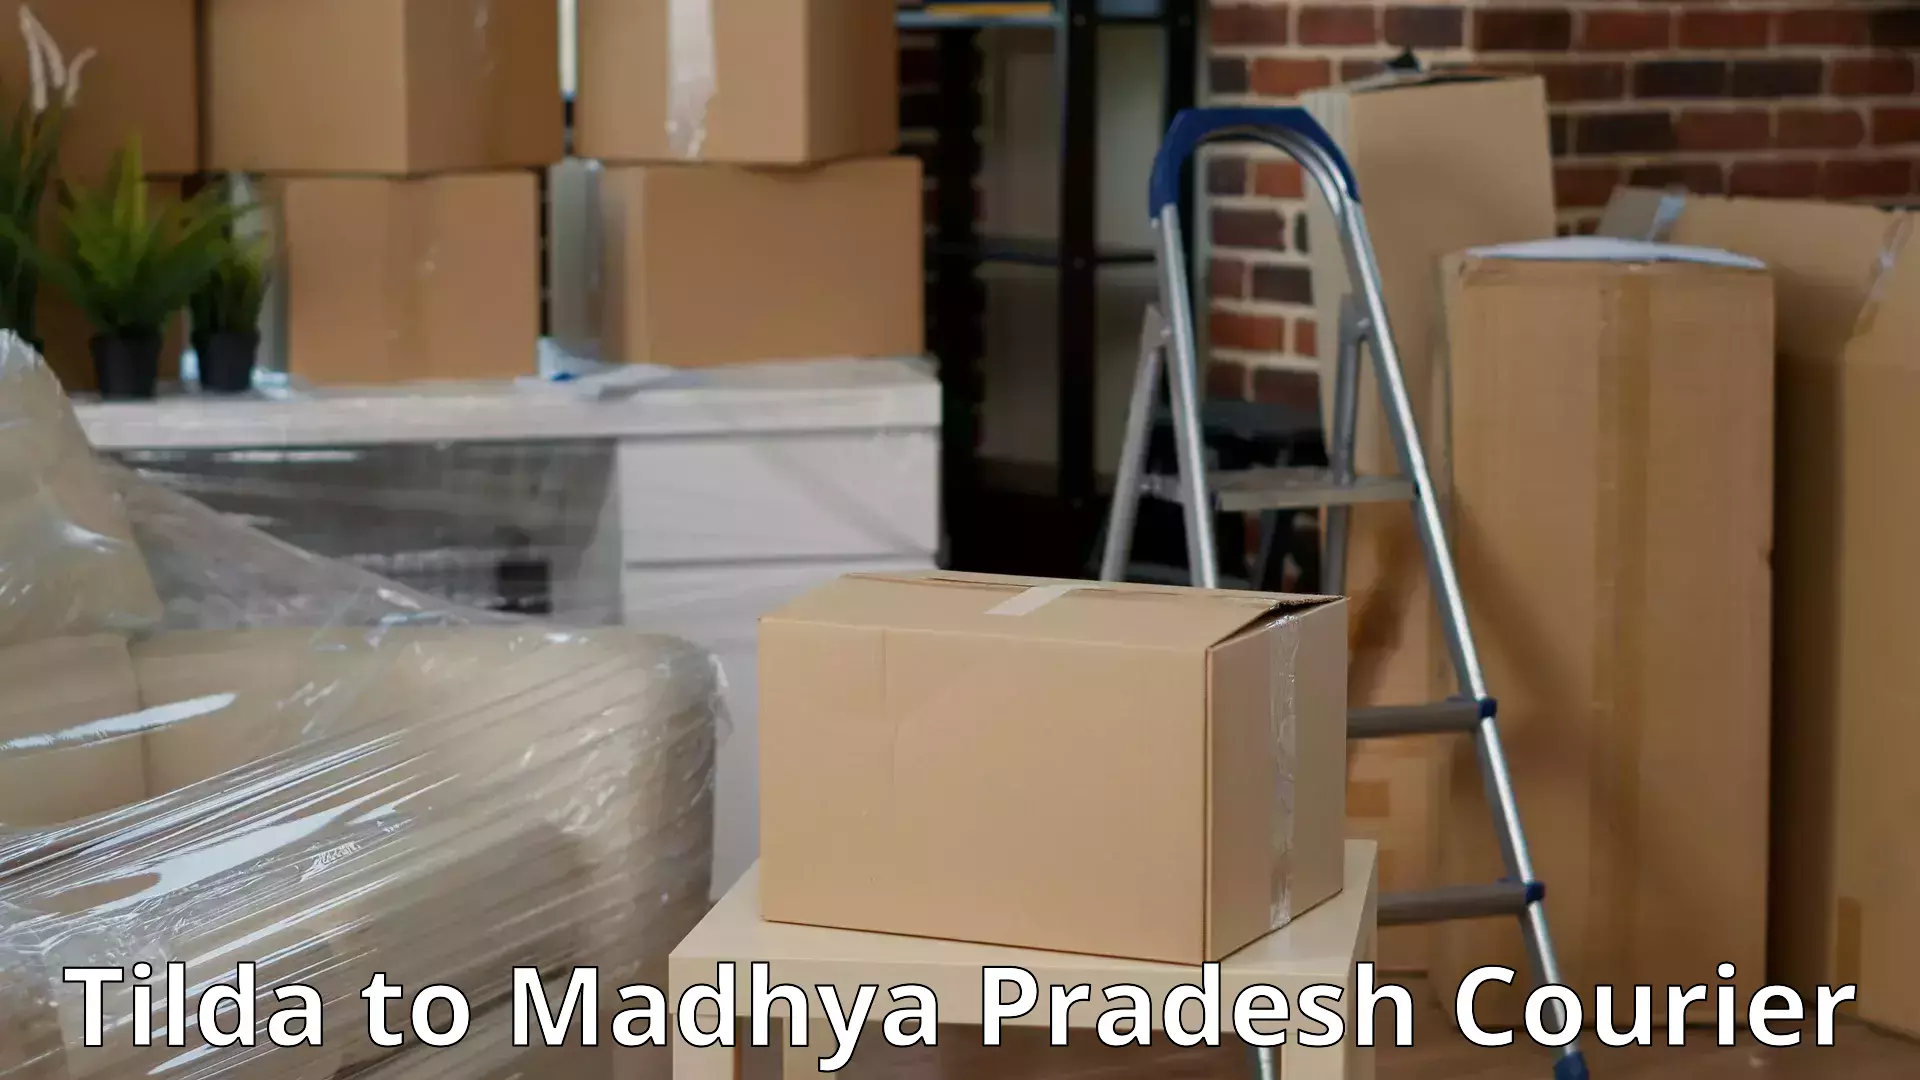 Safe moving services Tilda to Madhya Pradesh